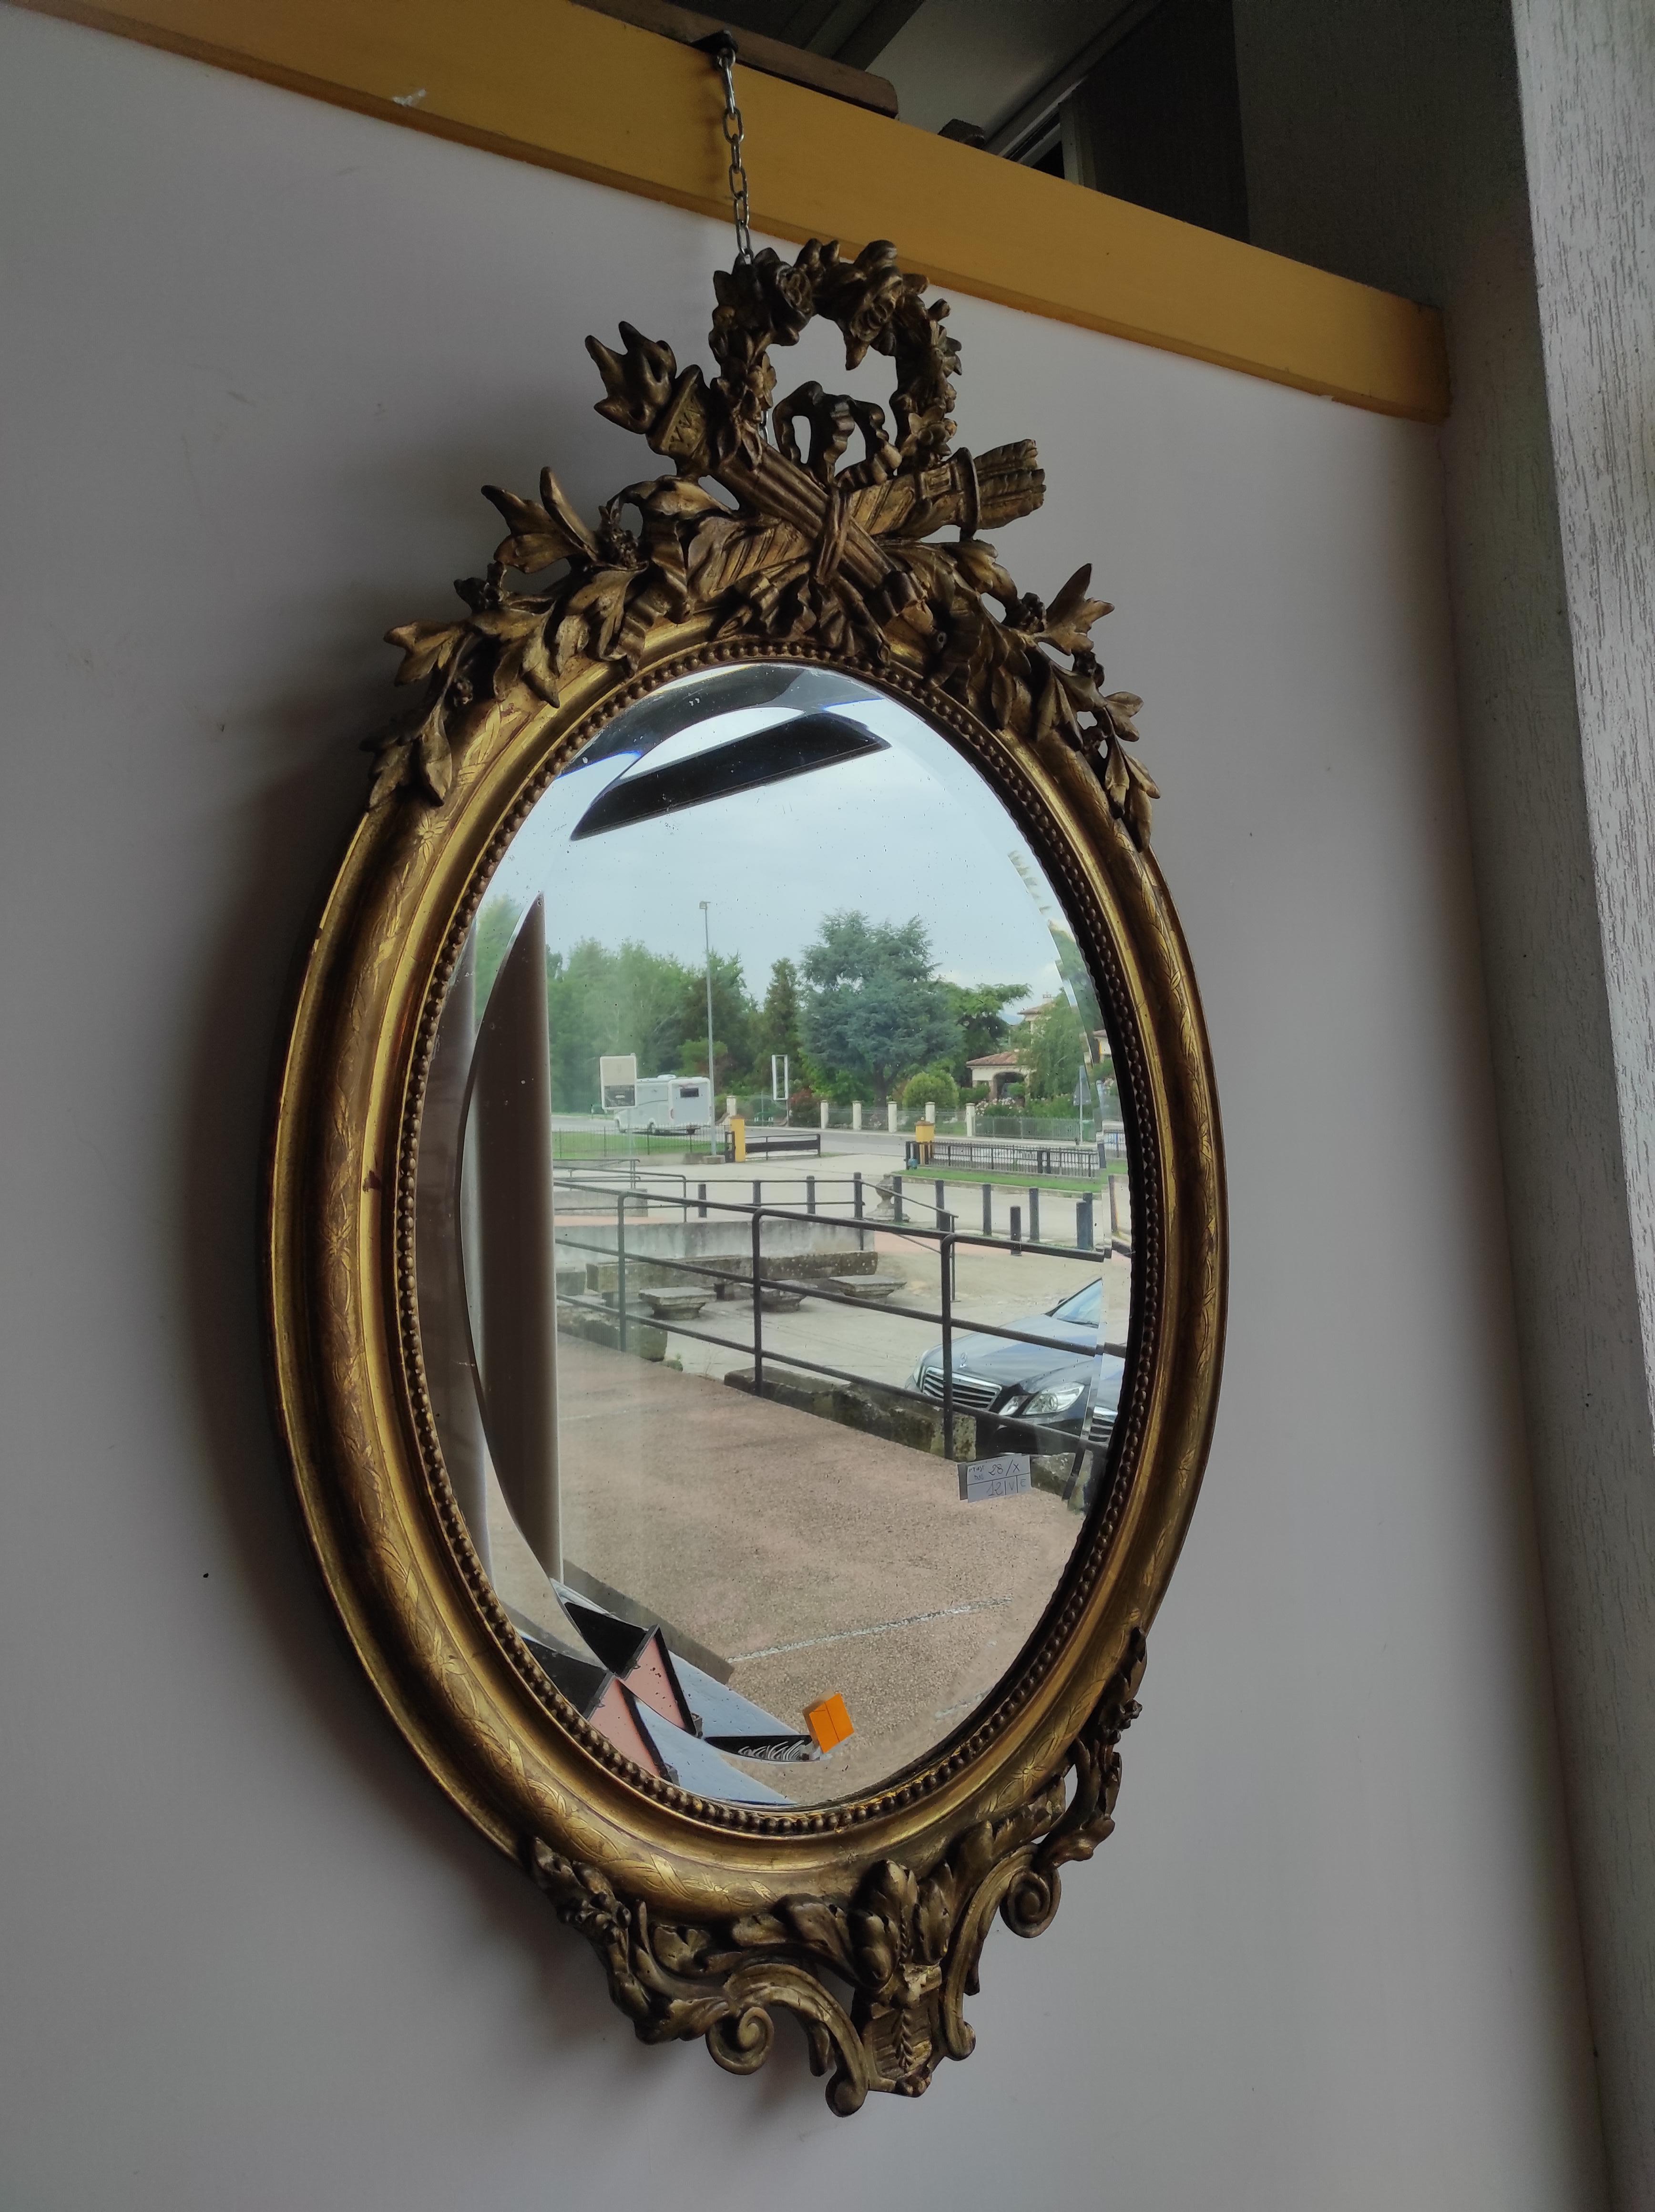 Miroir ovale en plâtre doré.
Période 1850
Provenance France
Le dos est en bois.
Le miroir est en mercure d'origine 
La guirlande de fleurs sur la cimaise, qui est restée intacte au fil des ans, est spectaculaire. Elle ne nécessite qu'une